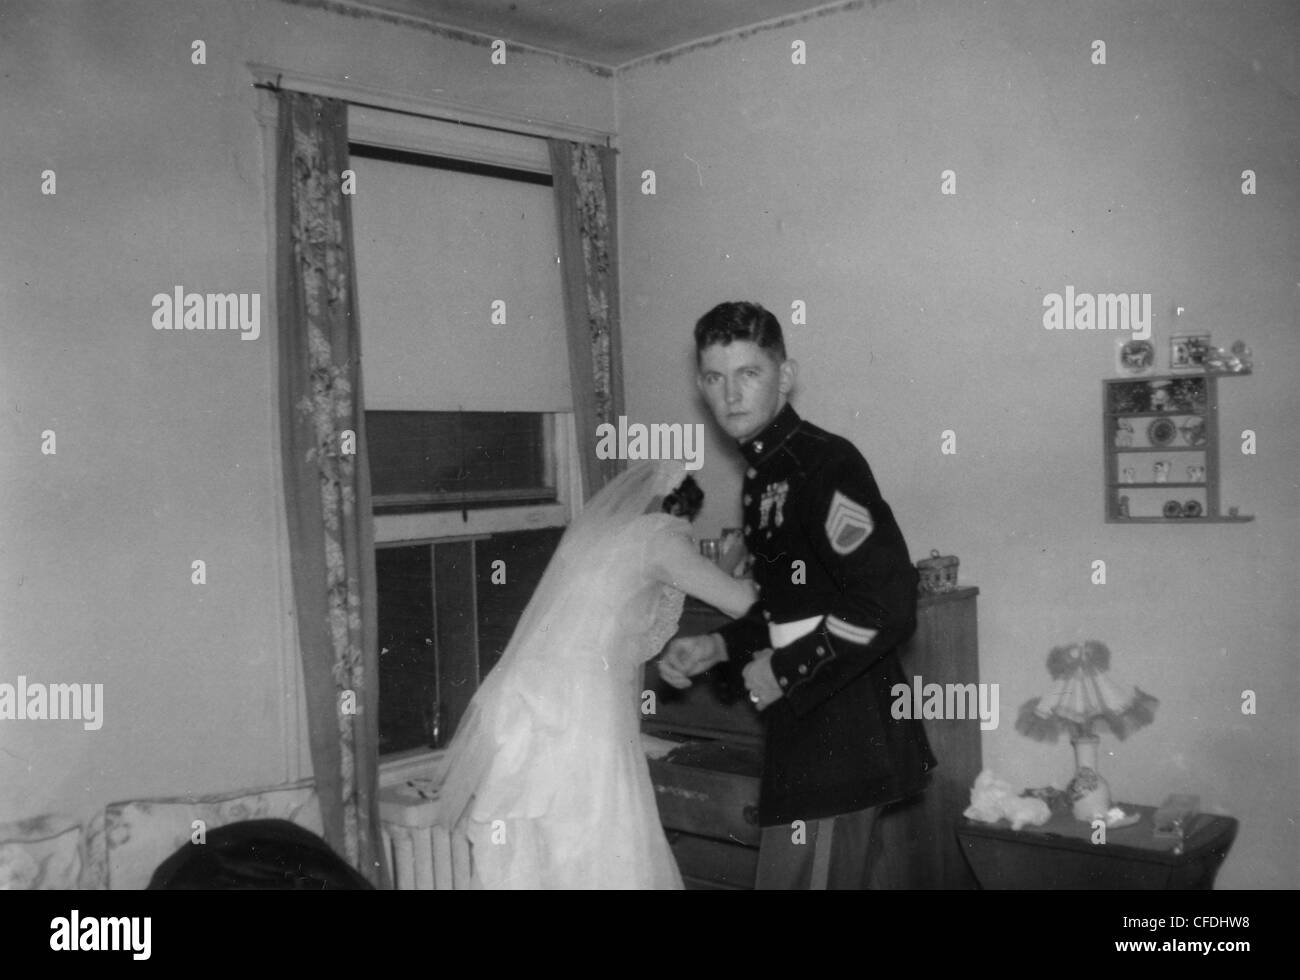 US Marine avec mariée se marier après la DEUXIÈME GUERRE MONDIALE La deuxième guerre mondiale 1940 mille yard stare famille militaire USMC war veteran marié Banque D'Images